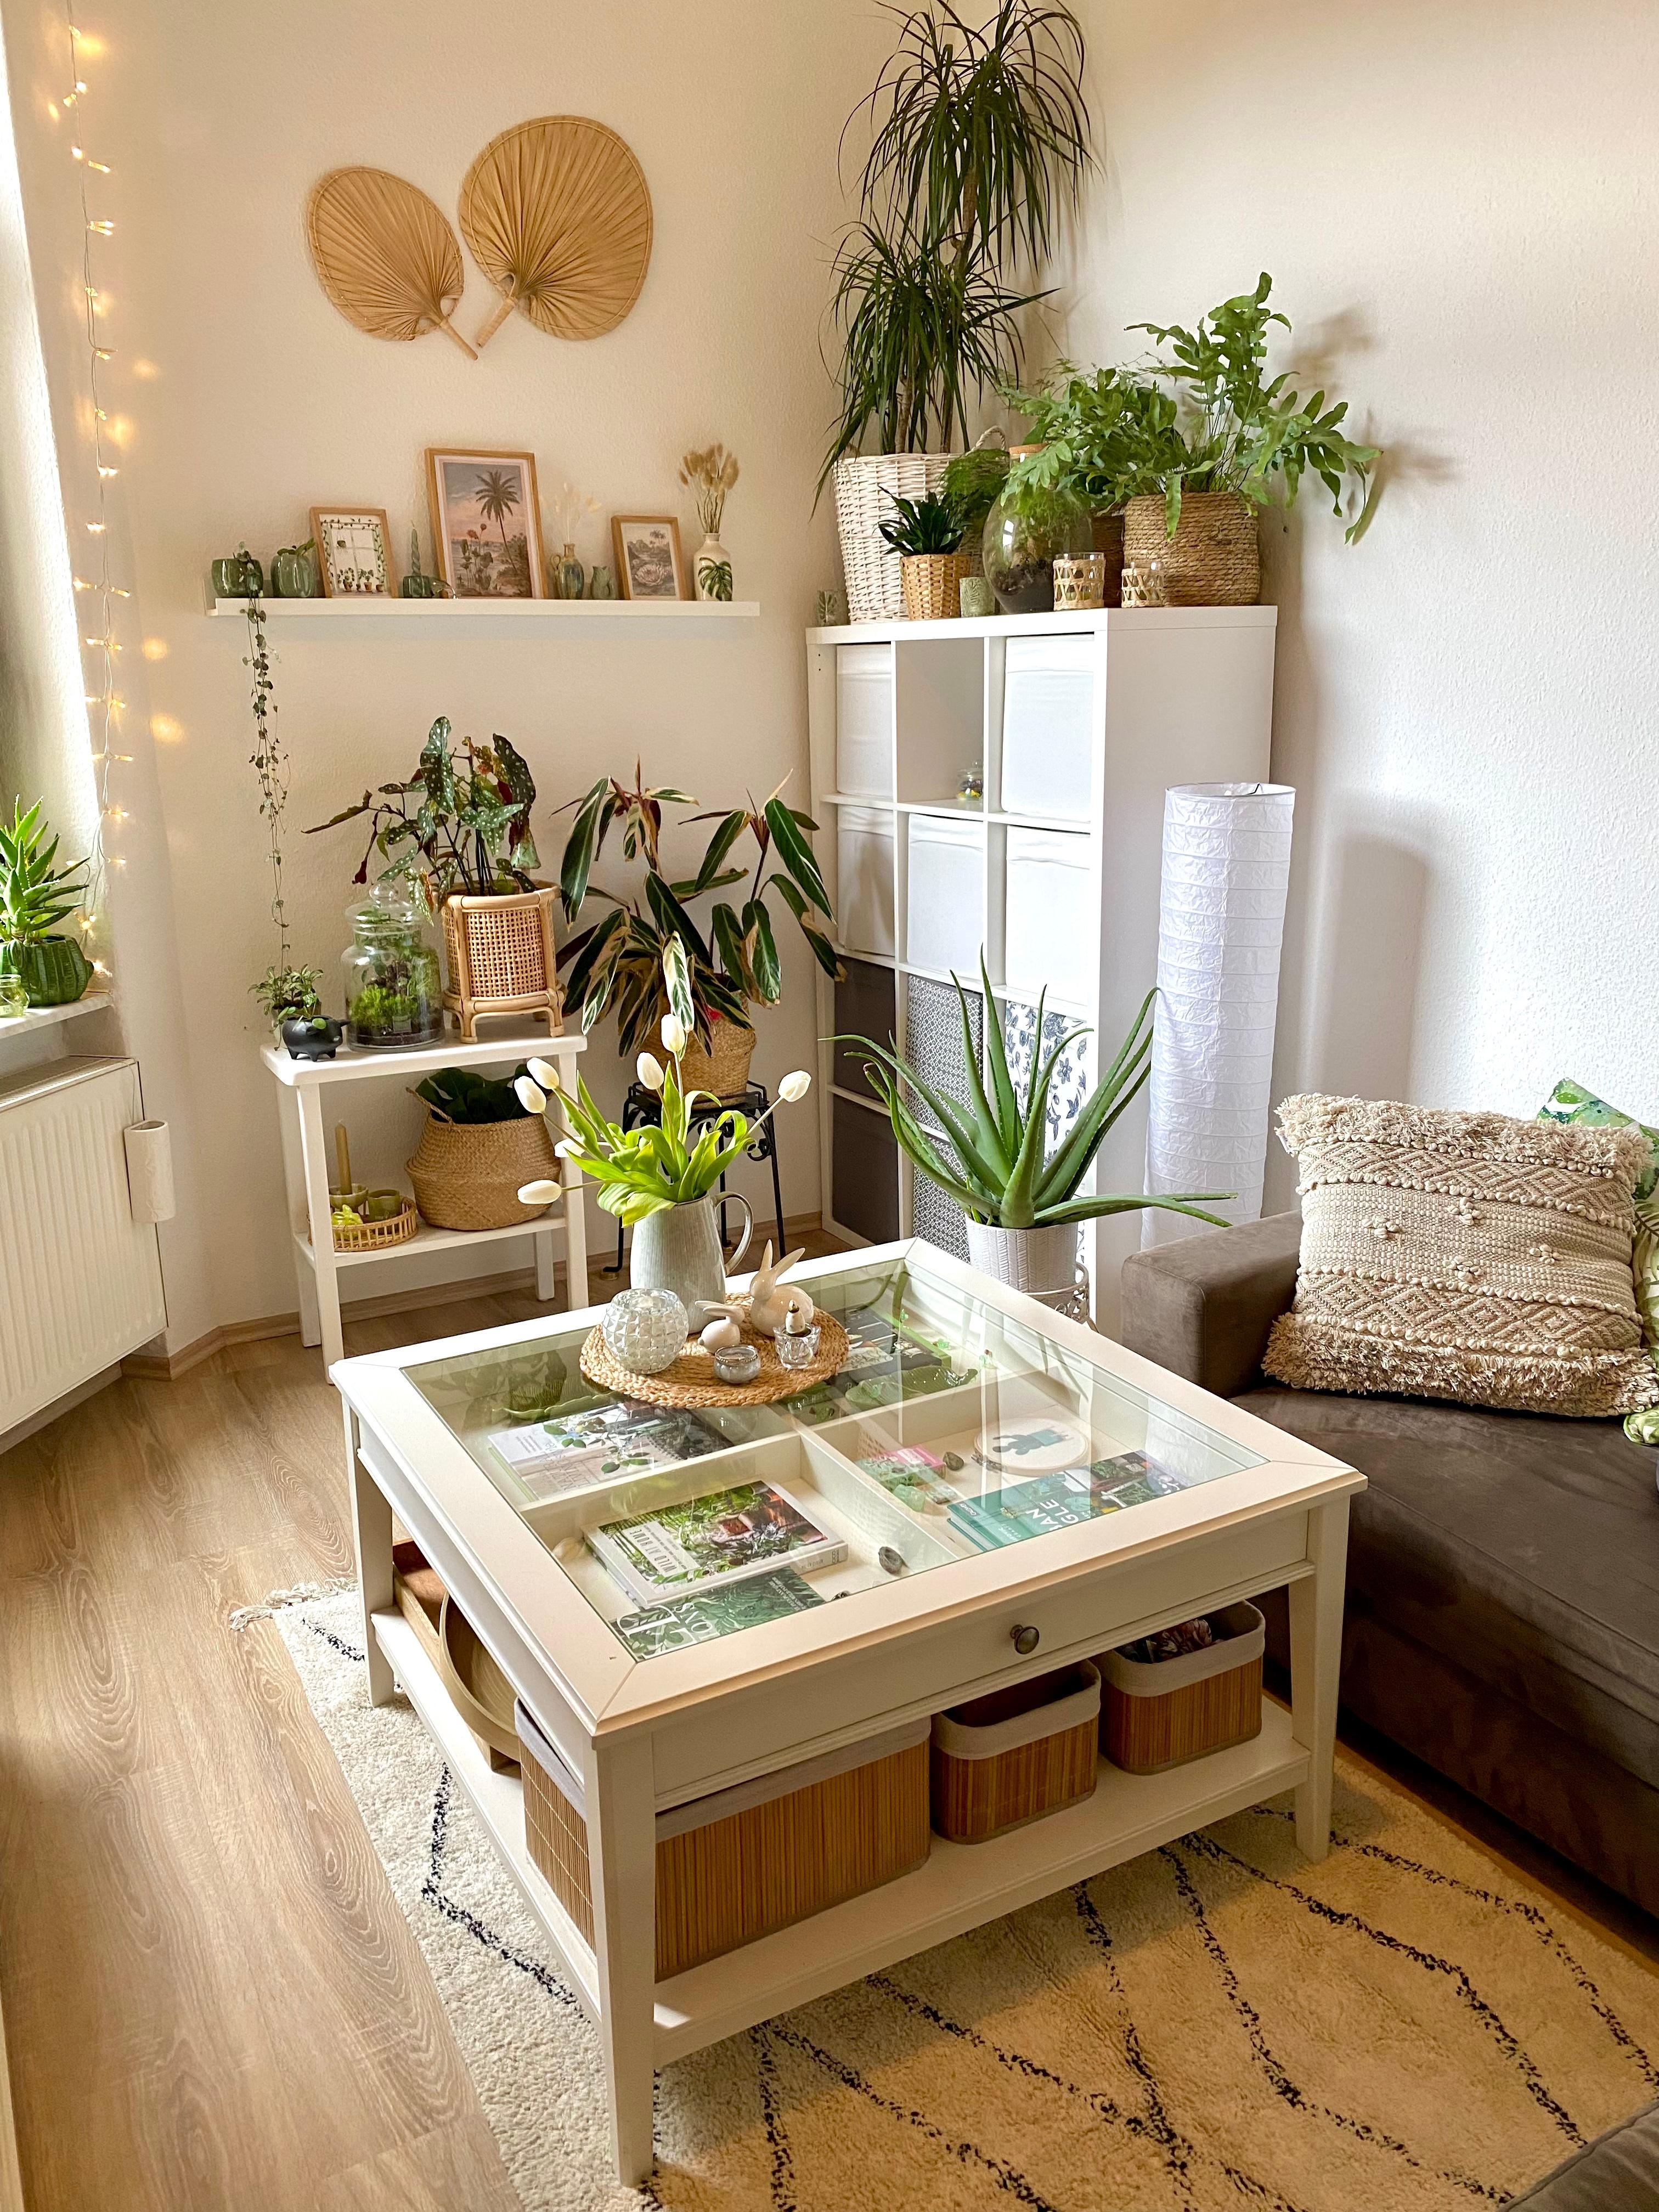 Neuer Teppich für mehr #bohovibes !
#pflanzenliebe #deko #einrichtung #dekoration #wohnzimmer #plants 